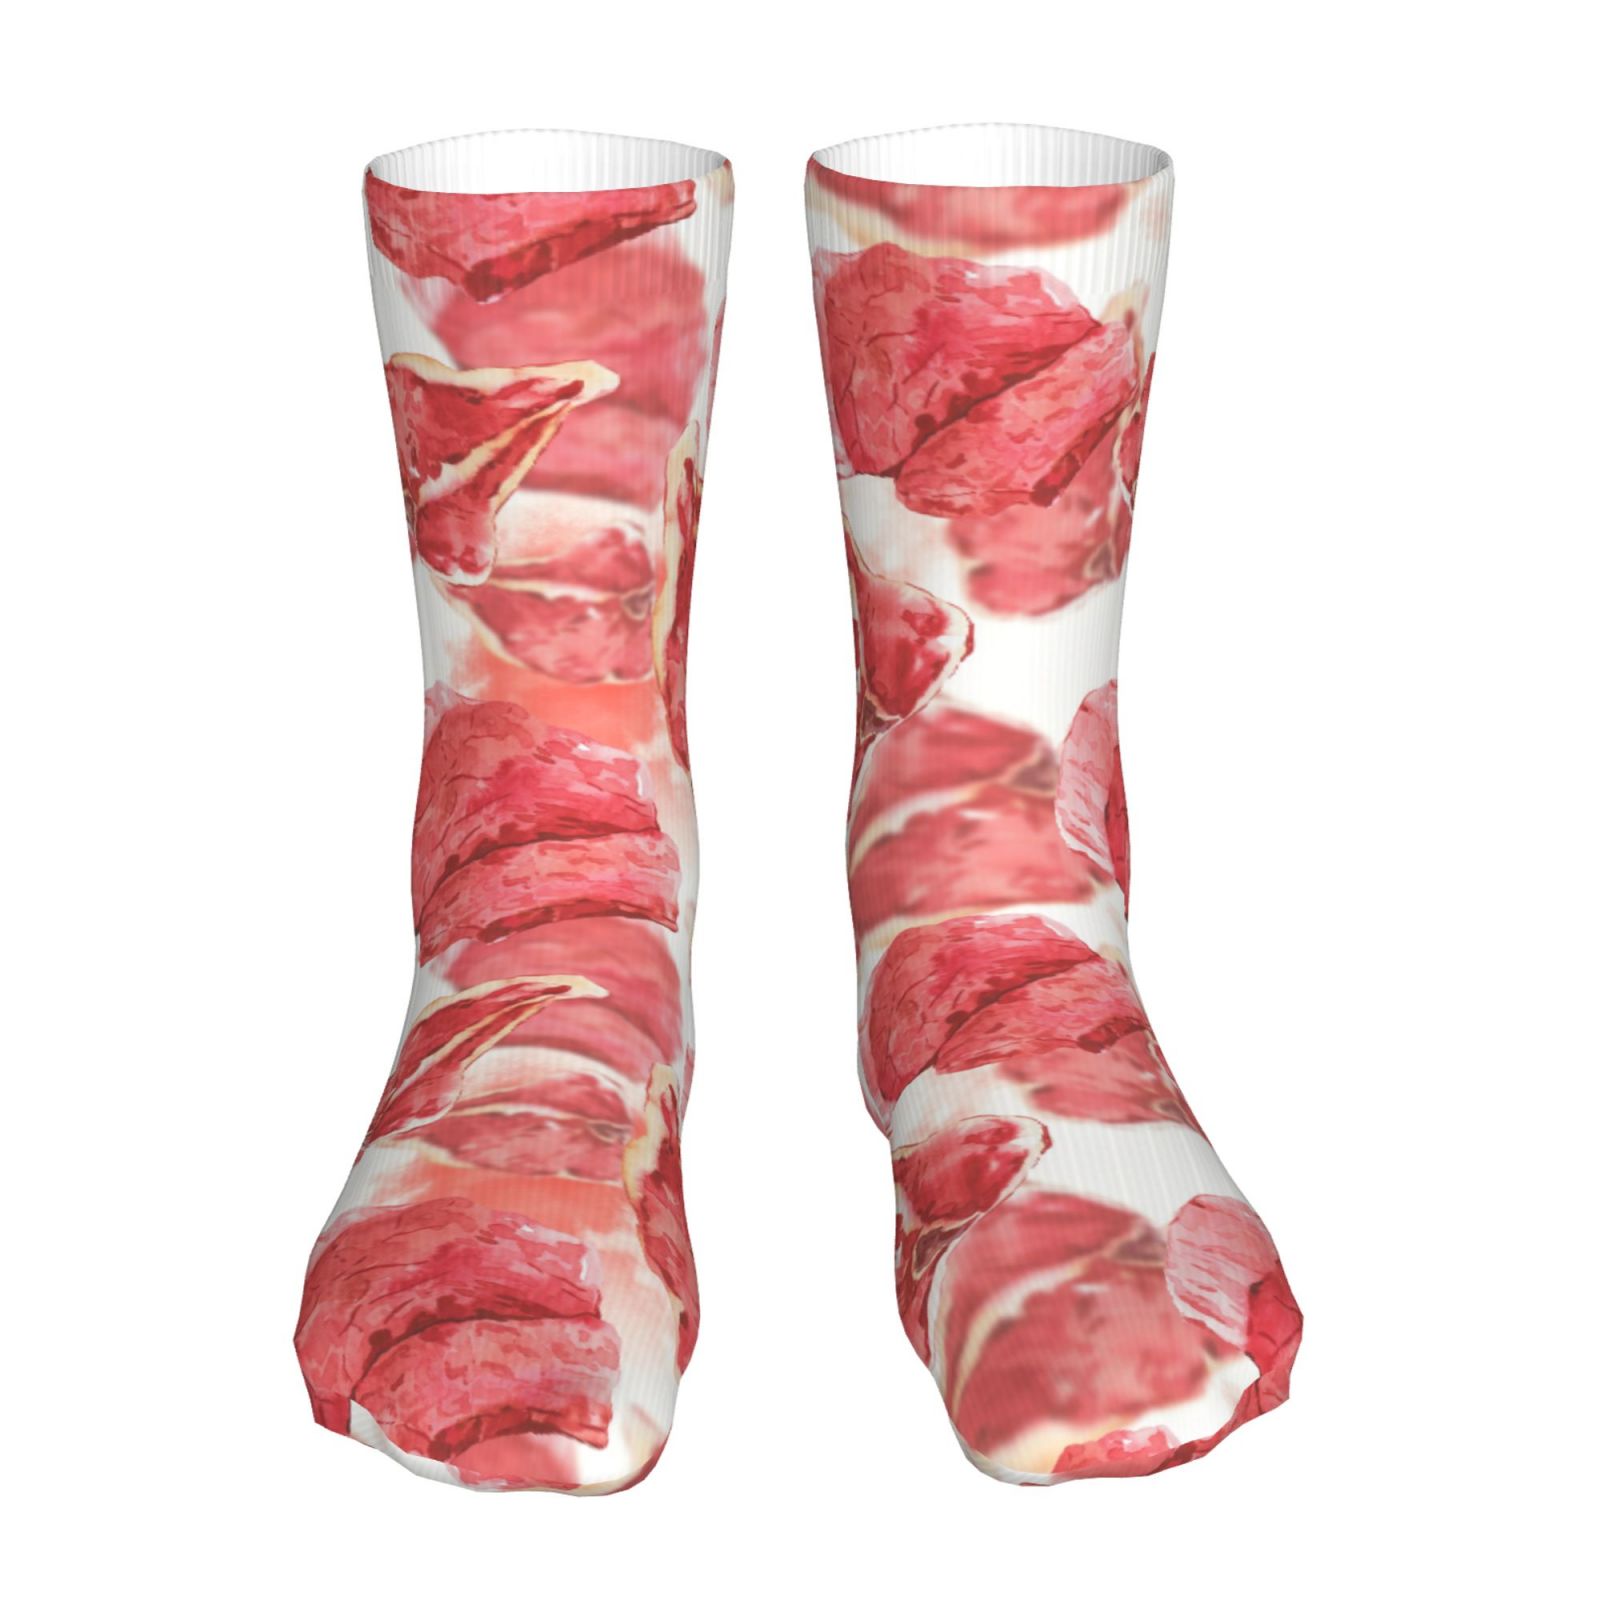 Delicious Steak Pattern Socks for Men Women Casual Short Socks 40 Cm ...